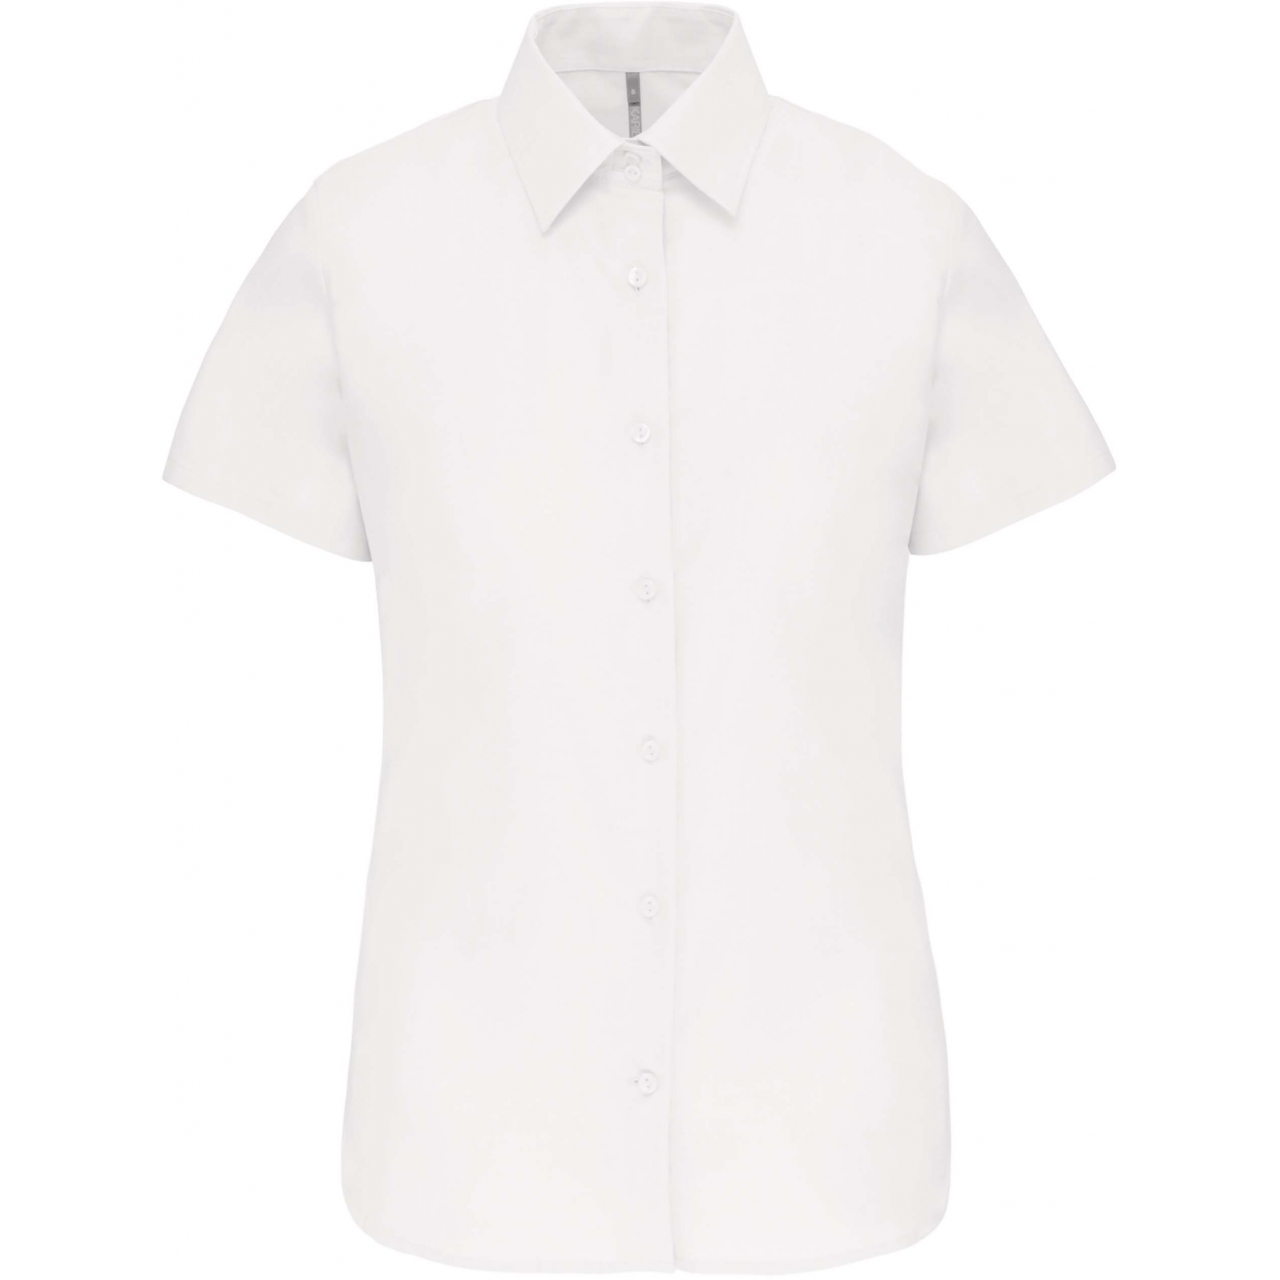 Košile dámská s krátkým rukávem Kariban Oxford - bílá, XL